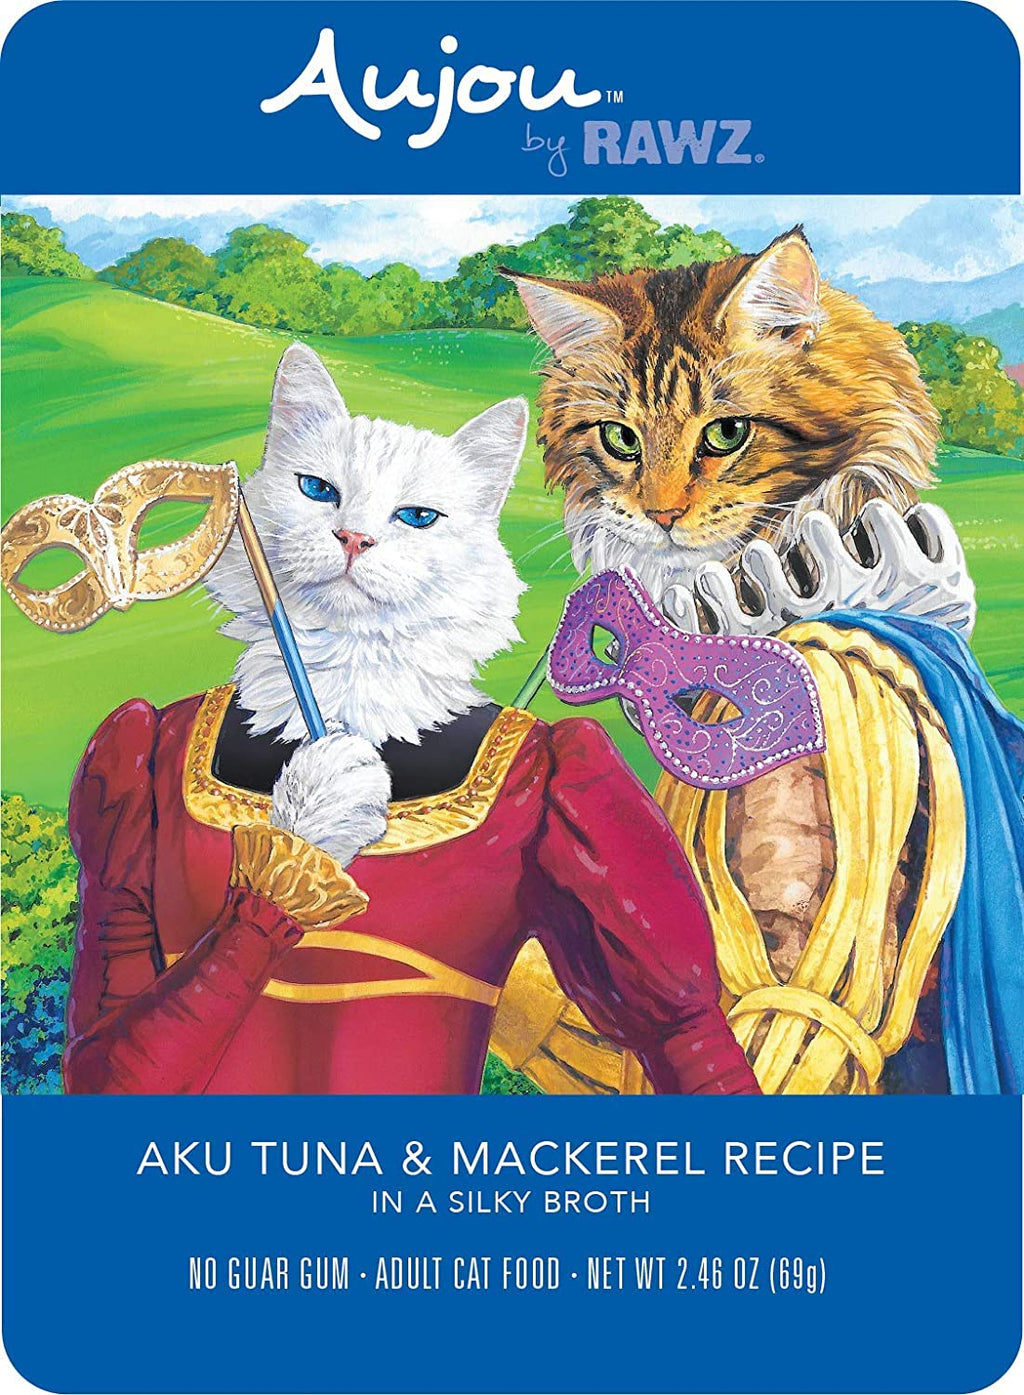 Rawz Aujou Aku Tuna & Mackerel Pouch Shredded Wet Cat Food - 2.46 oz - Case of 8  